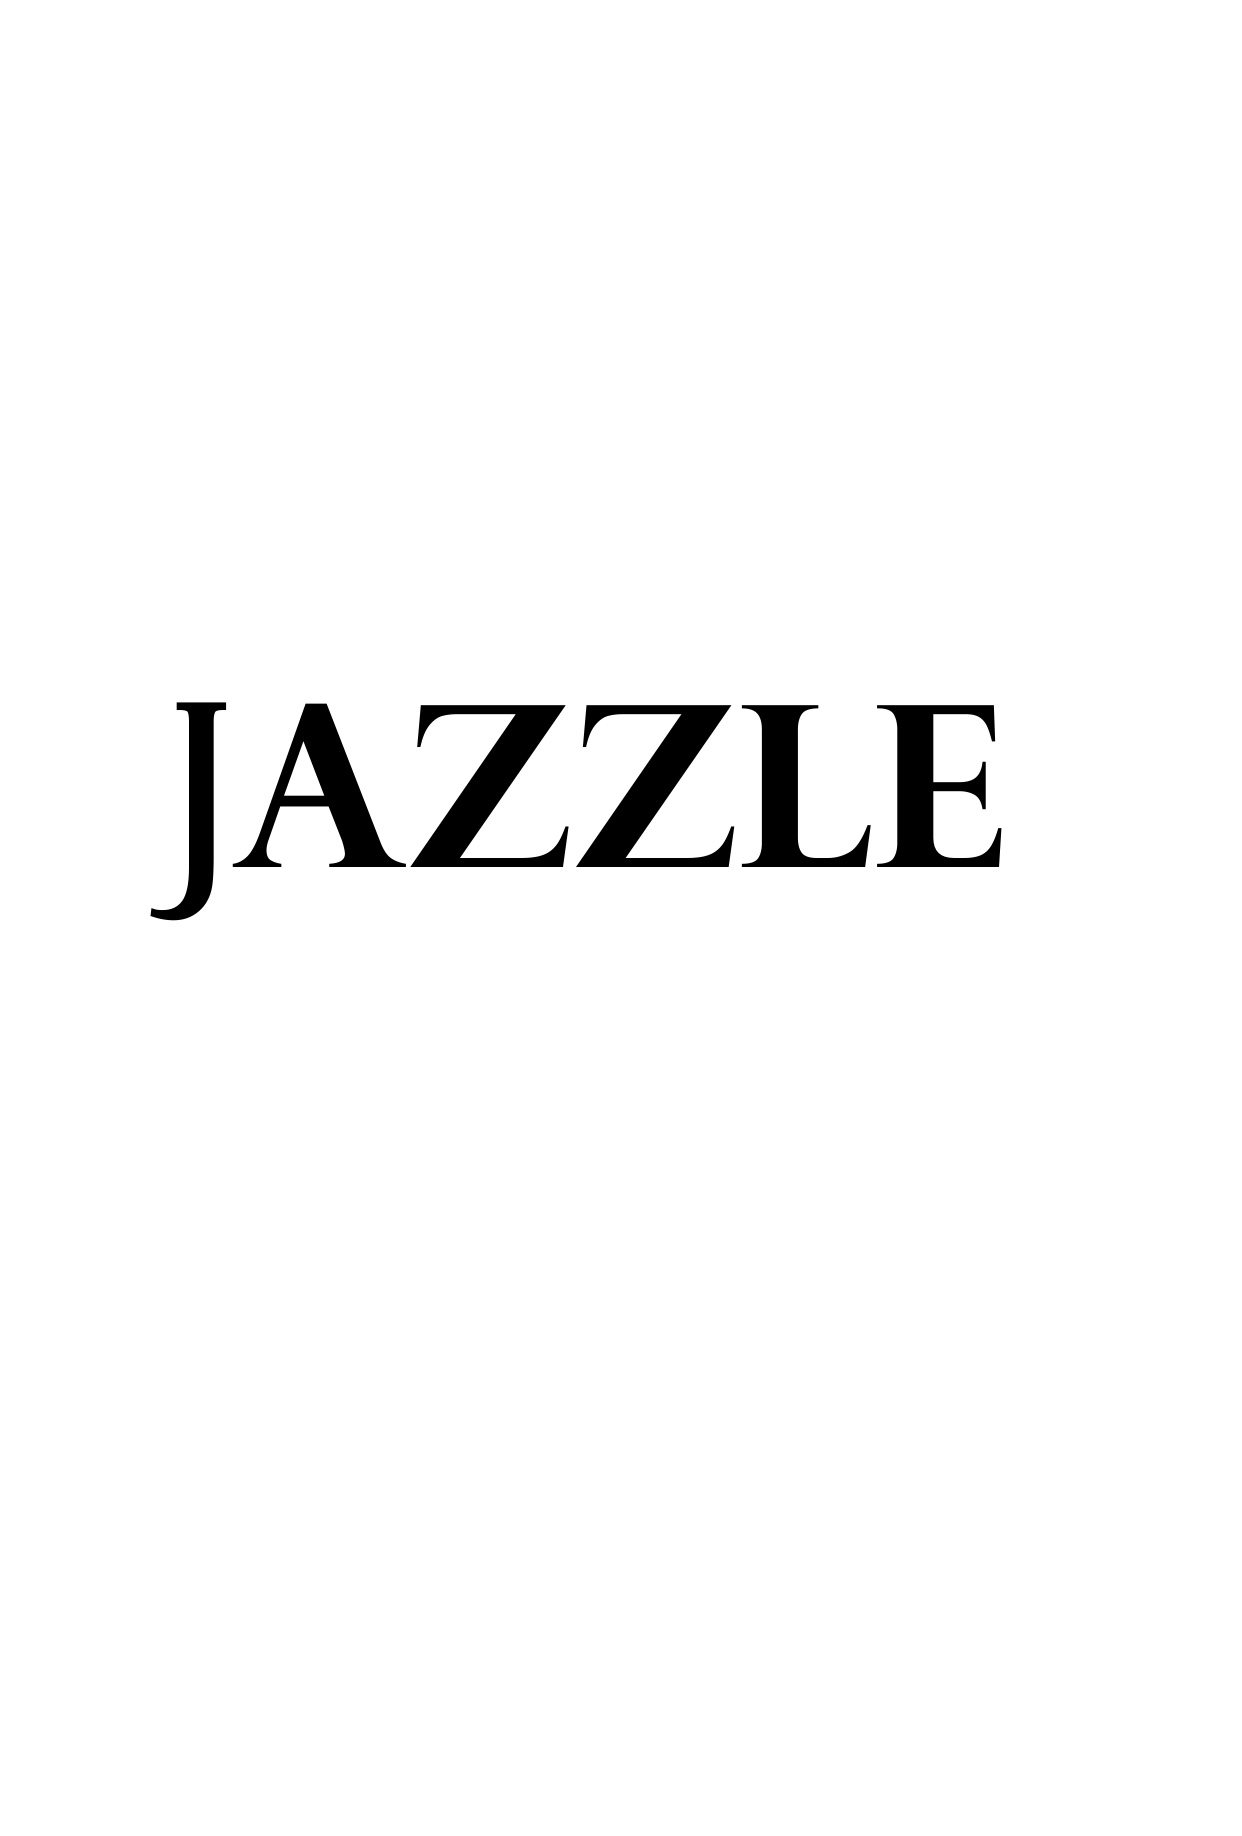 Home | Jazzle